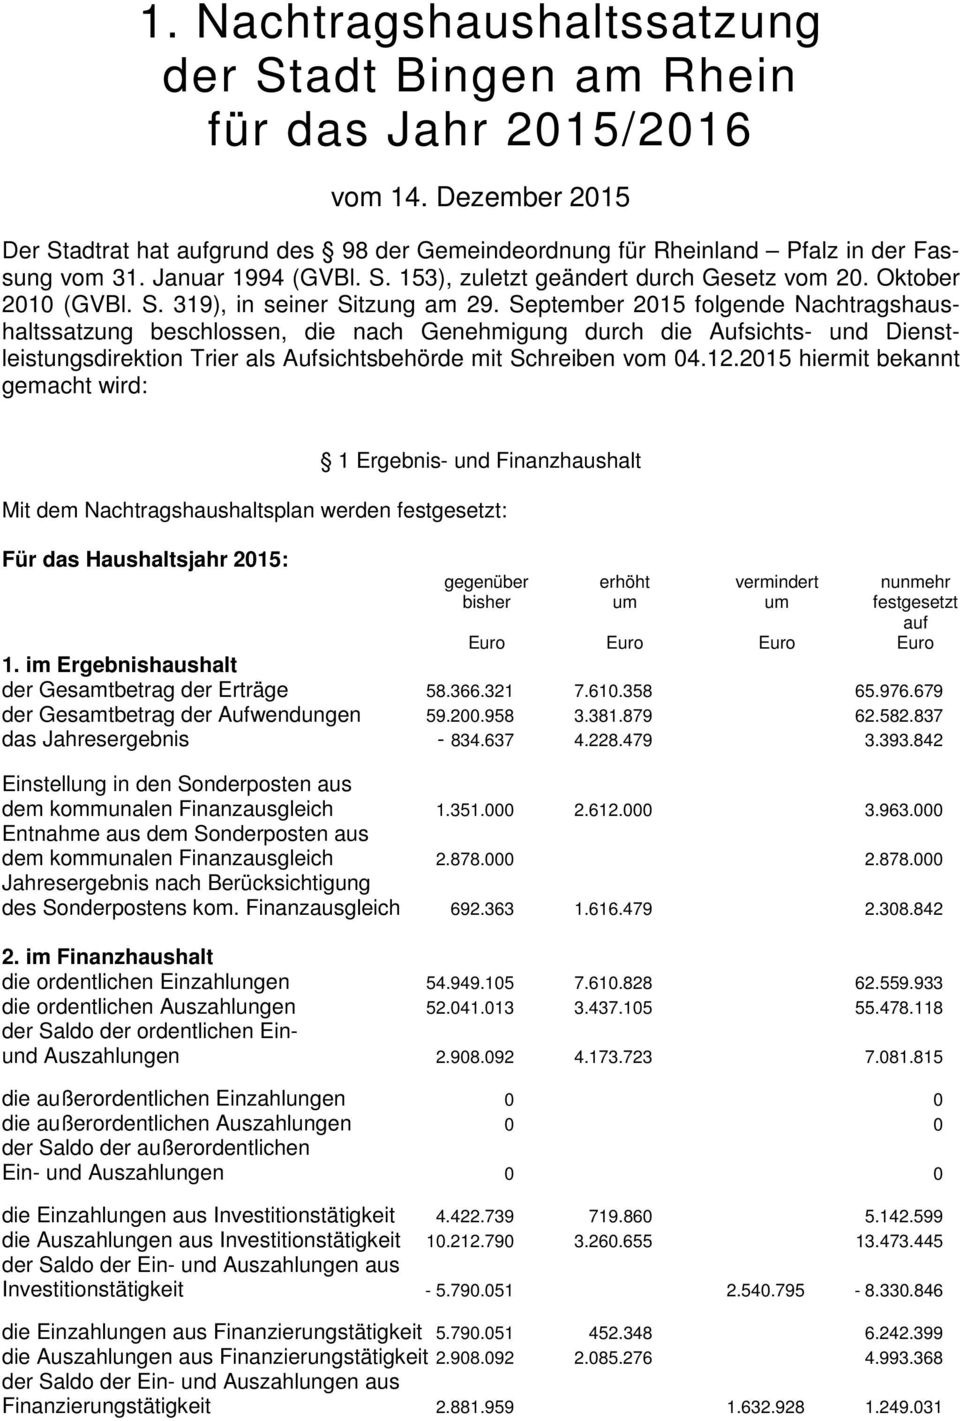 September 2015 folgende Nachtragshaushaltssatzung beschlossen, die nach Genehmigung durch die Aufsichts- und Dienstleistungsdirektion Trier als Aufsichtsbehörde mit Schreiben vom 04.12.